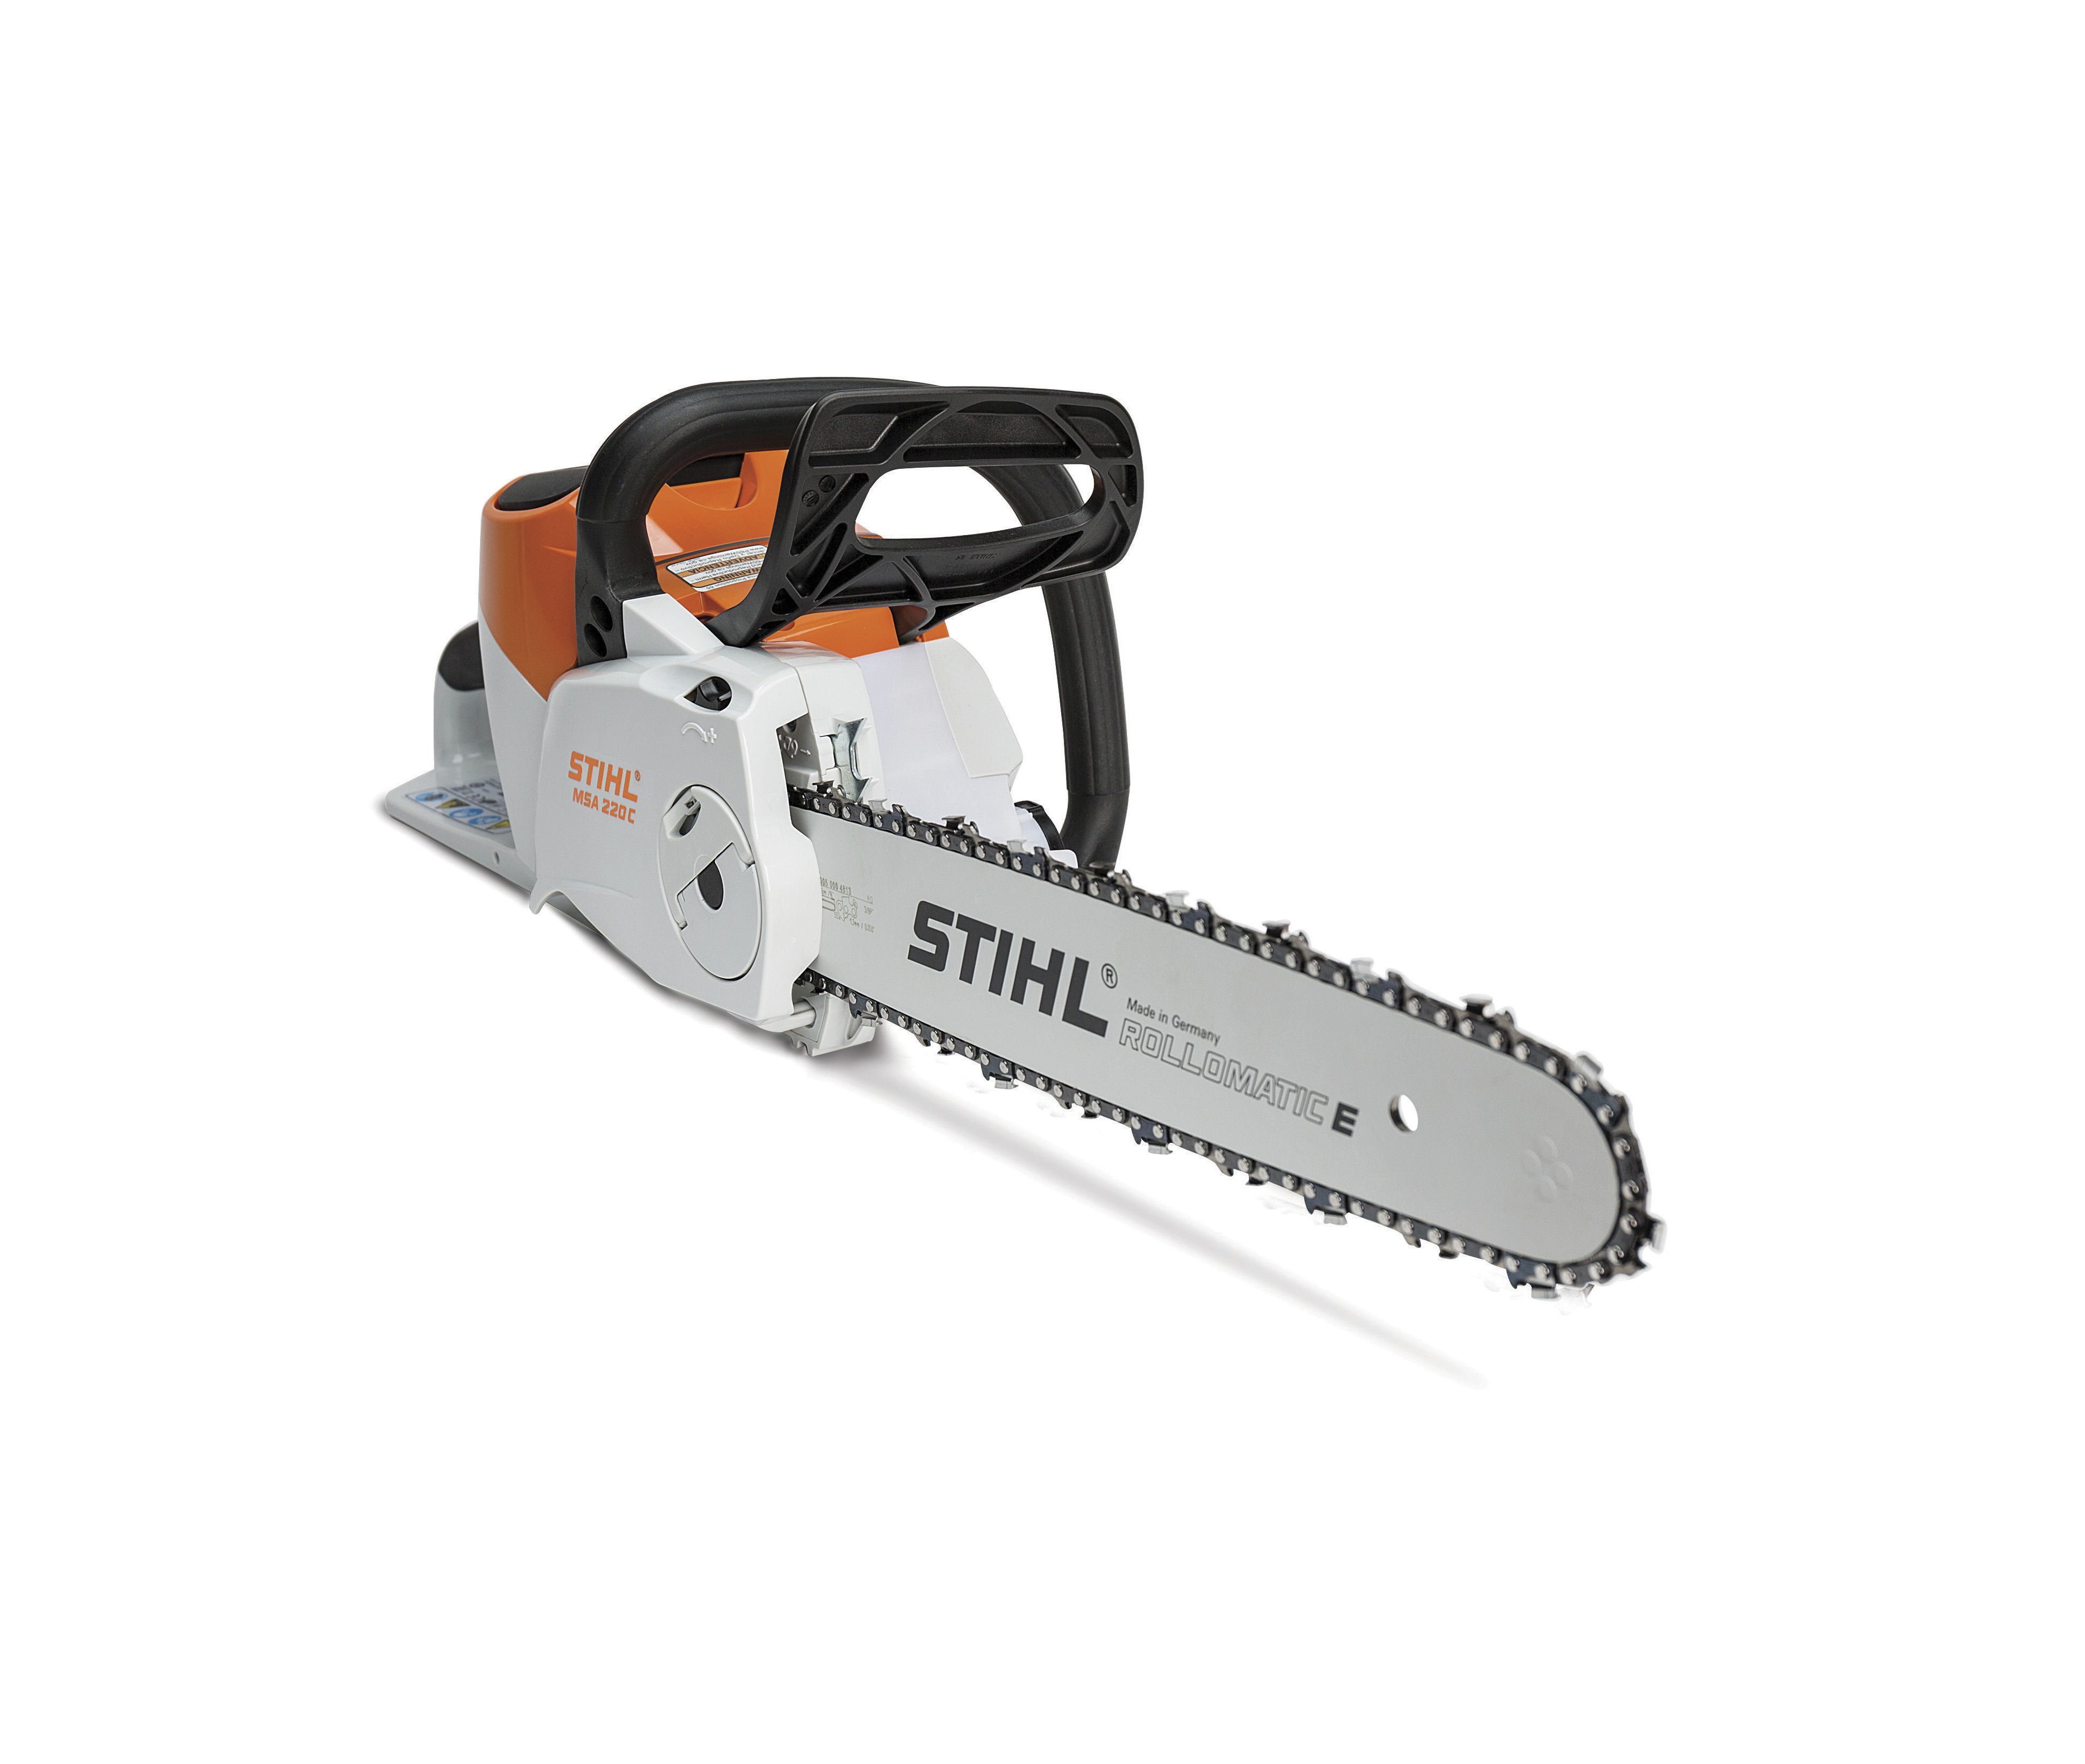 Stihl MSA 200 C-B Chainsaw